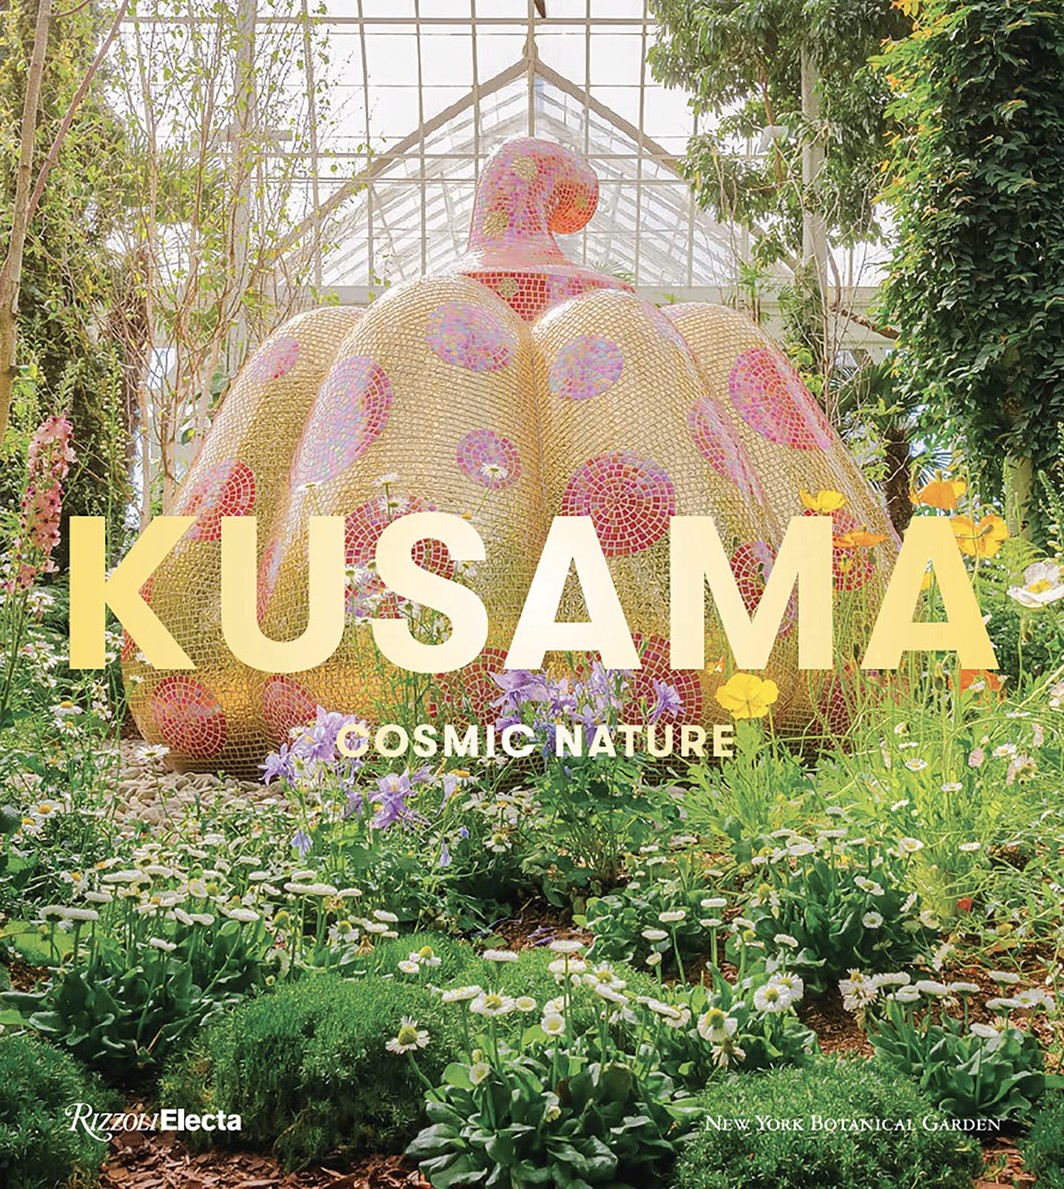 The cover of Kusama: Cosmic Nature